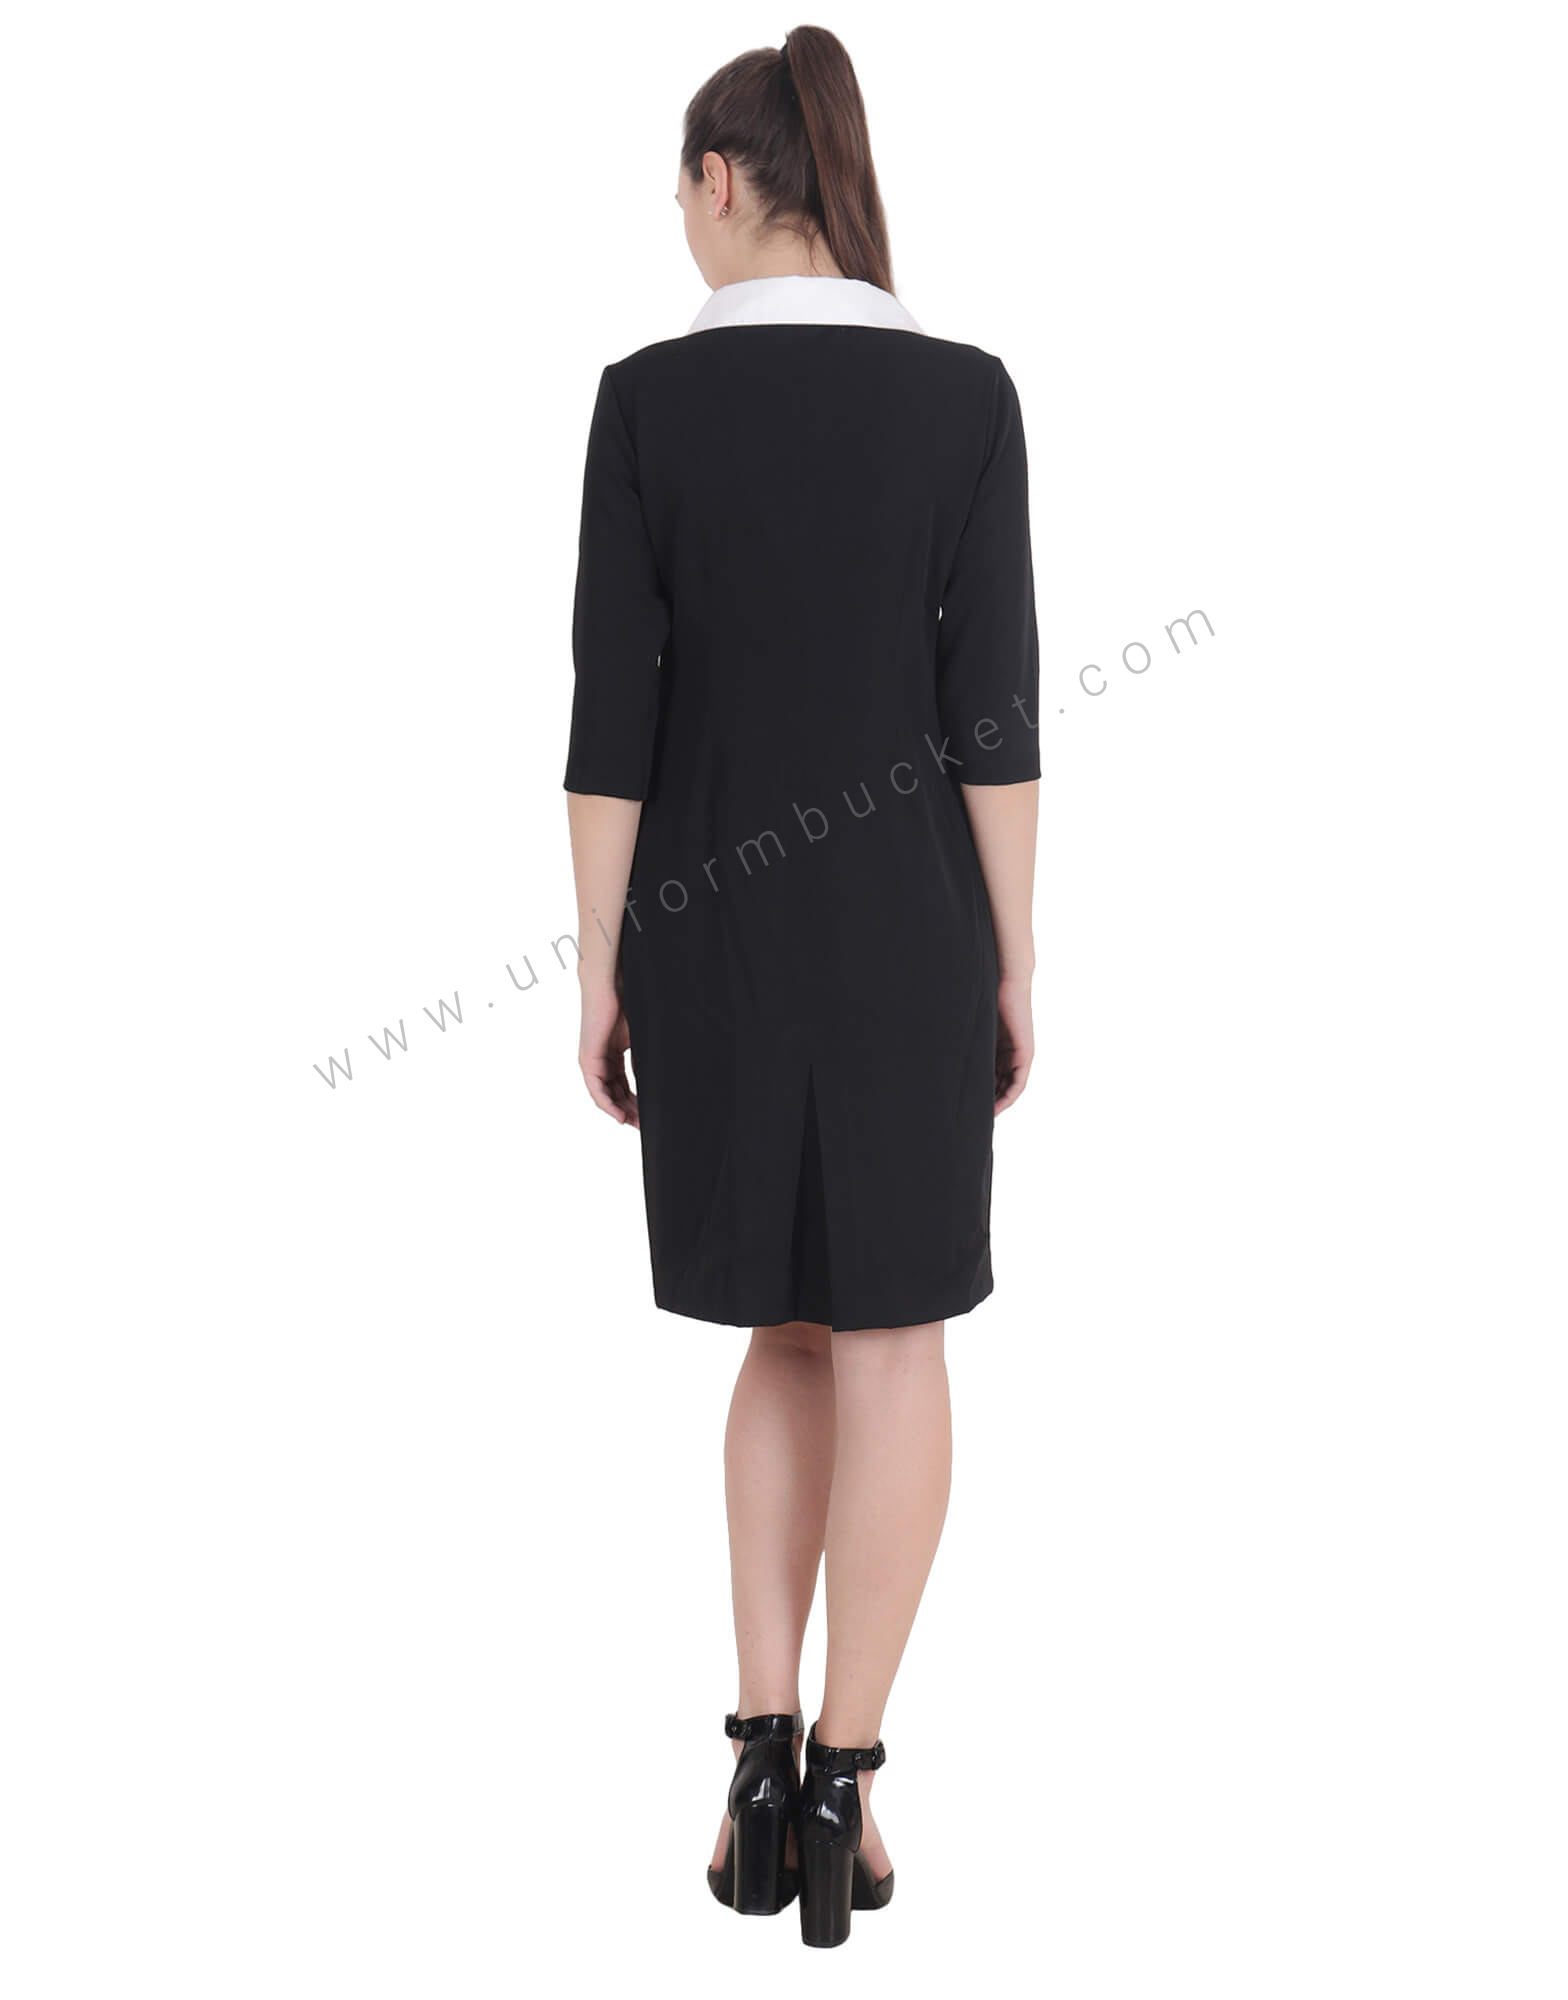 Formal Black Dress With Pocket Zip